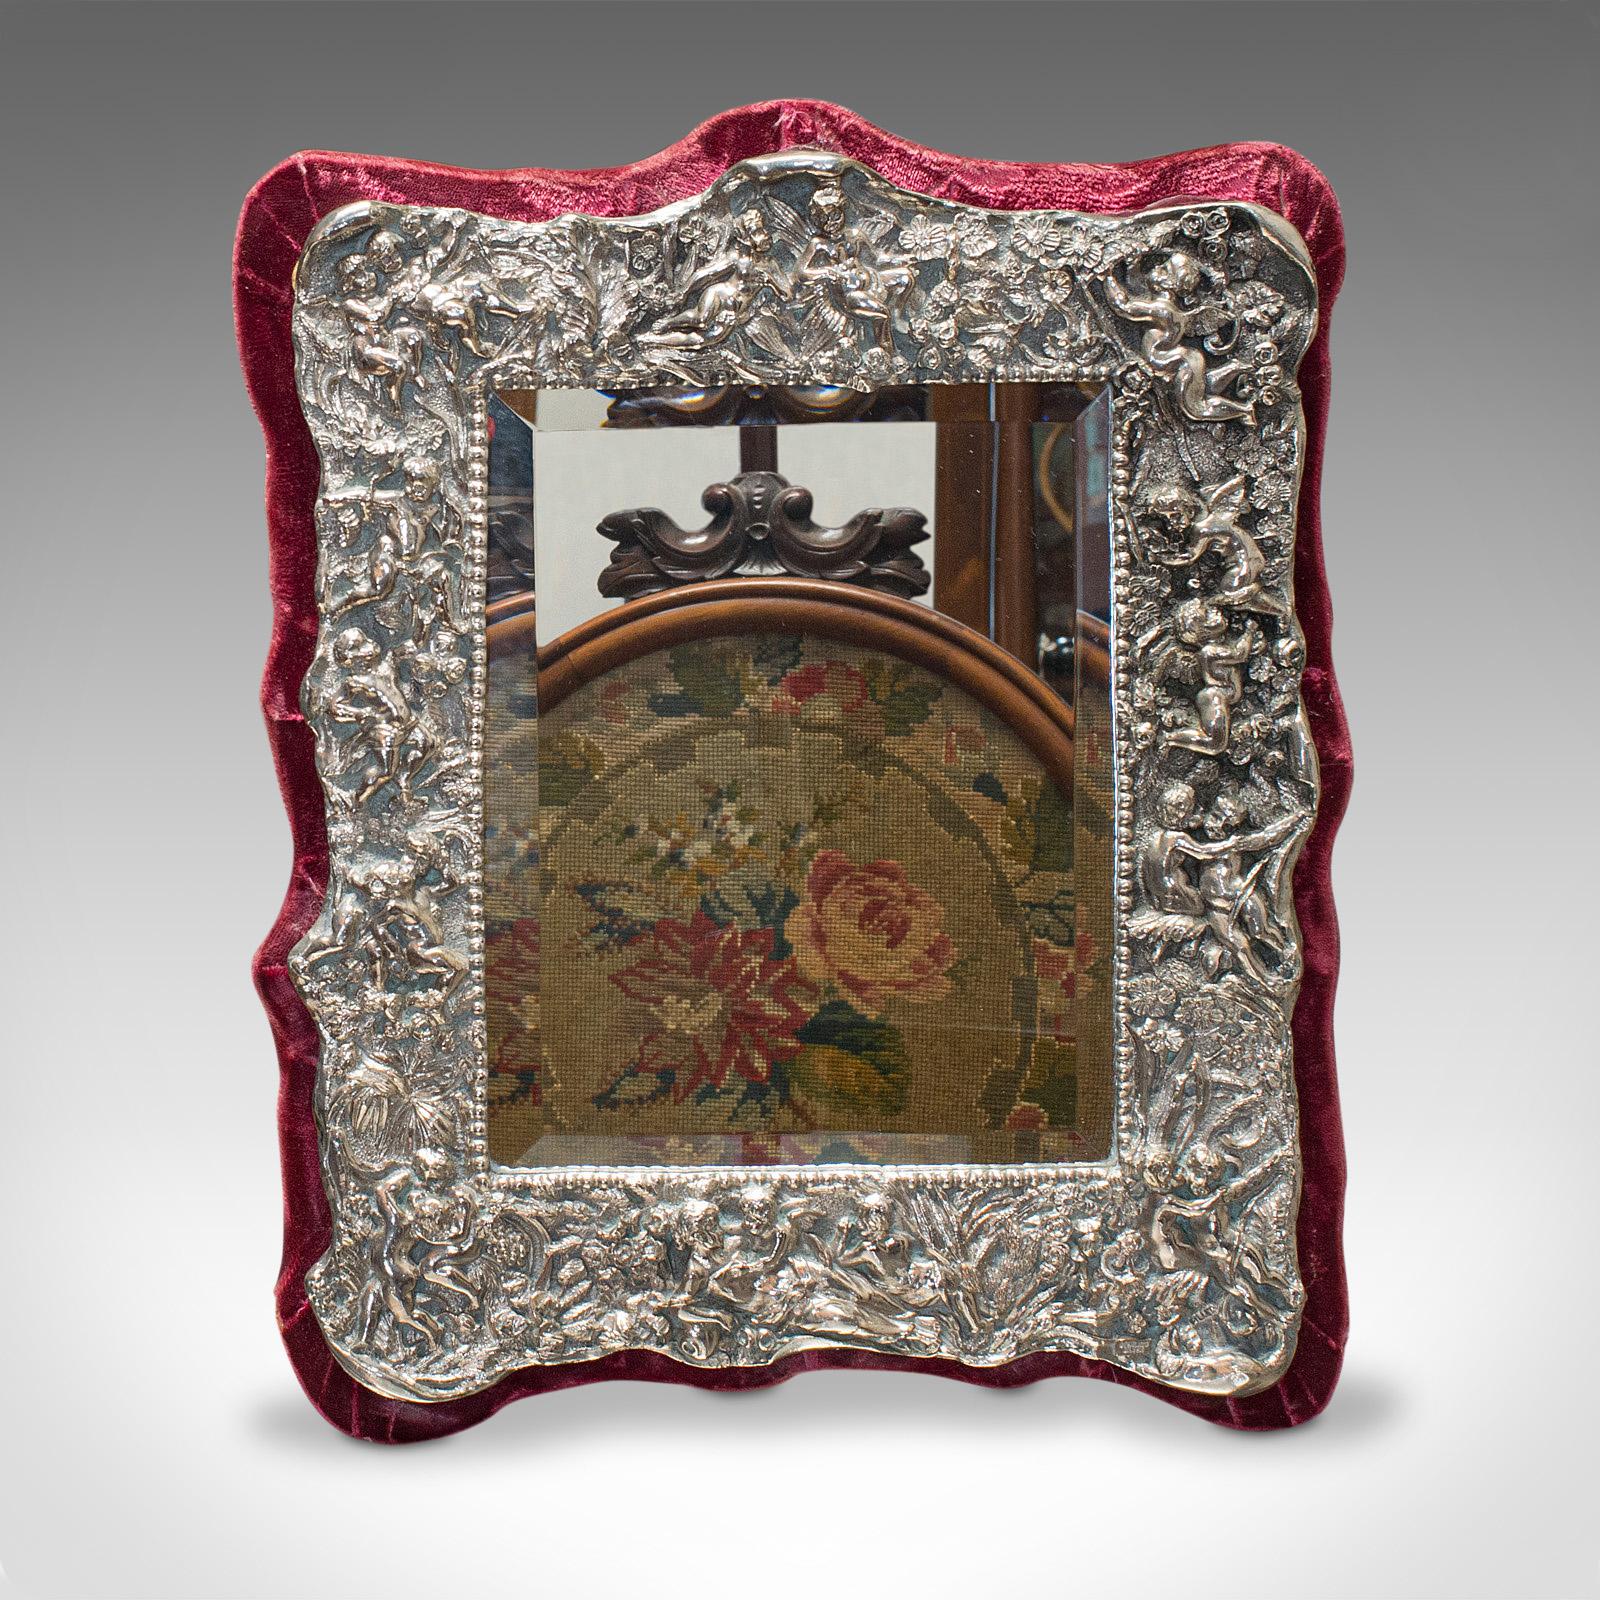 Dies ist ein dekorativer Vintage-Spiegel. Ein englischer Spiegel aus Sterlingsilber und Glas aus der Mitte des 20. Jahrhunderts, um 1950.

Verschnörkelter Spiegelrahmen mit leuchtender Farbe
Zeigt eine wünschenswerte gealterte Patina
Rahmen aus